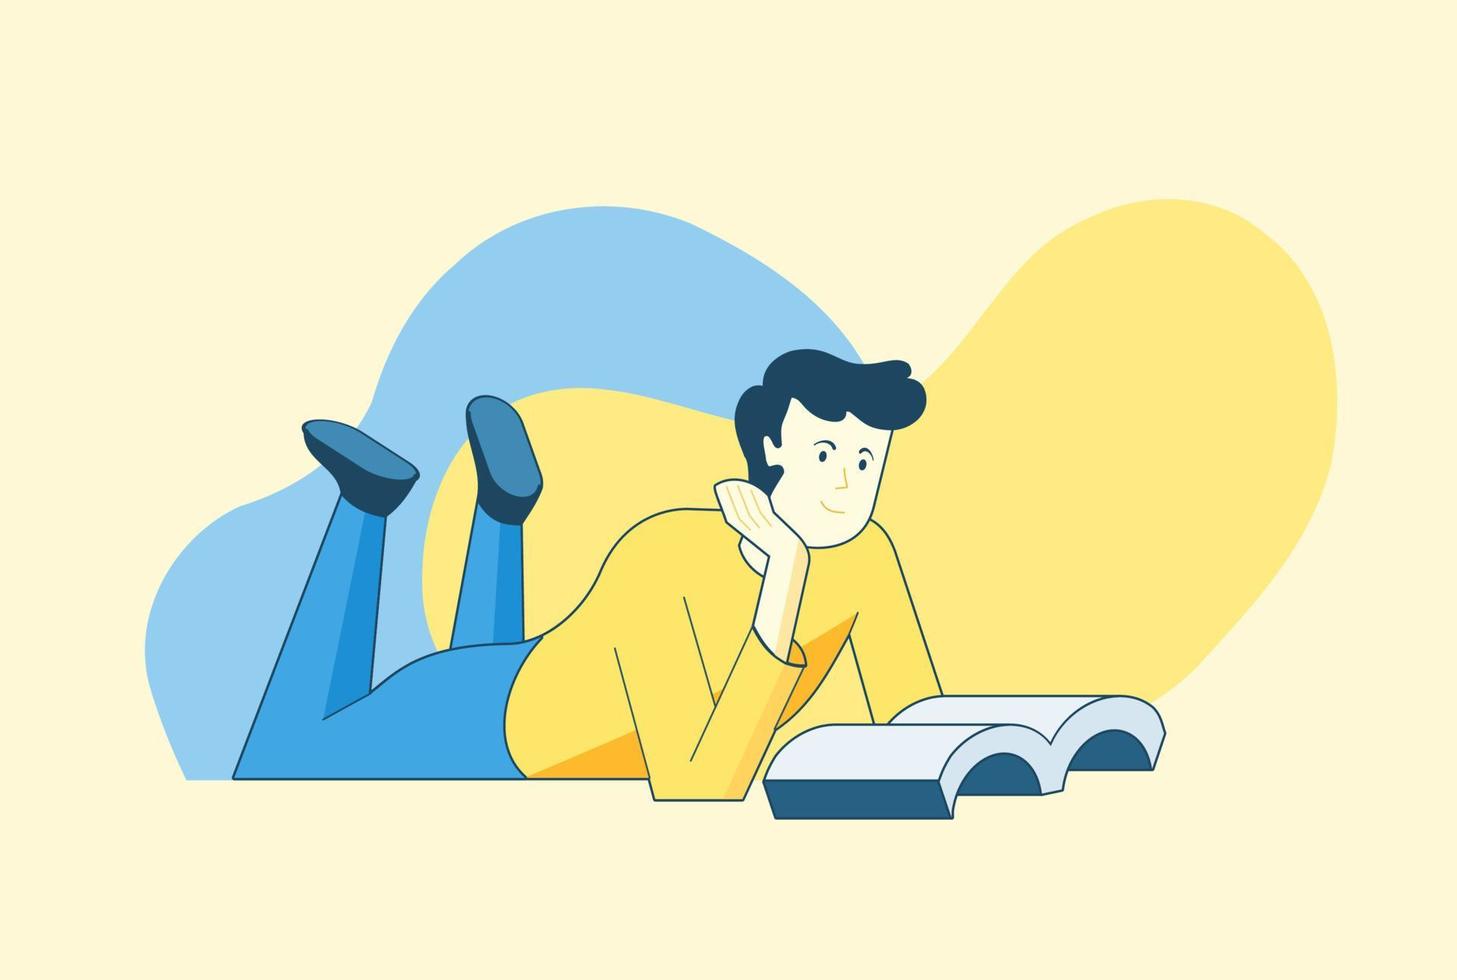 homme lisant un livre en position couchée illustration vectorielle plane vecteur